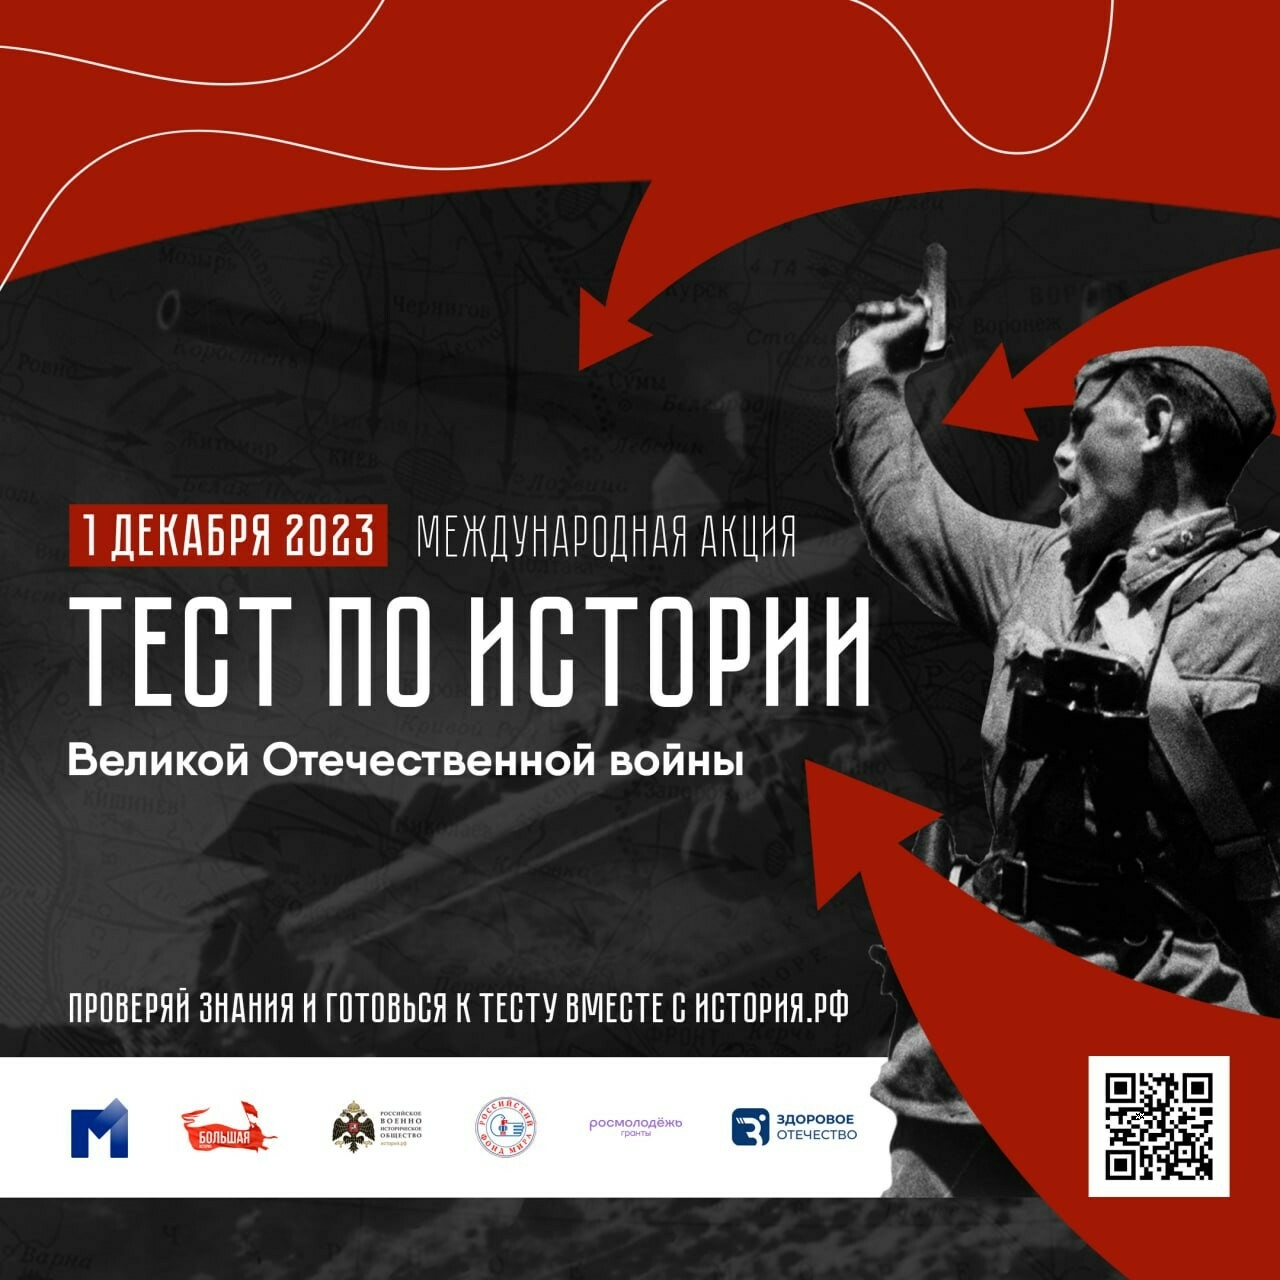 1 декабря в России пройдет акция «Тест по истории Великой Отечественной войны»